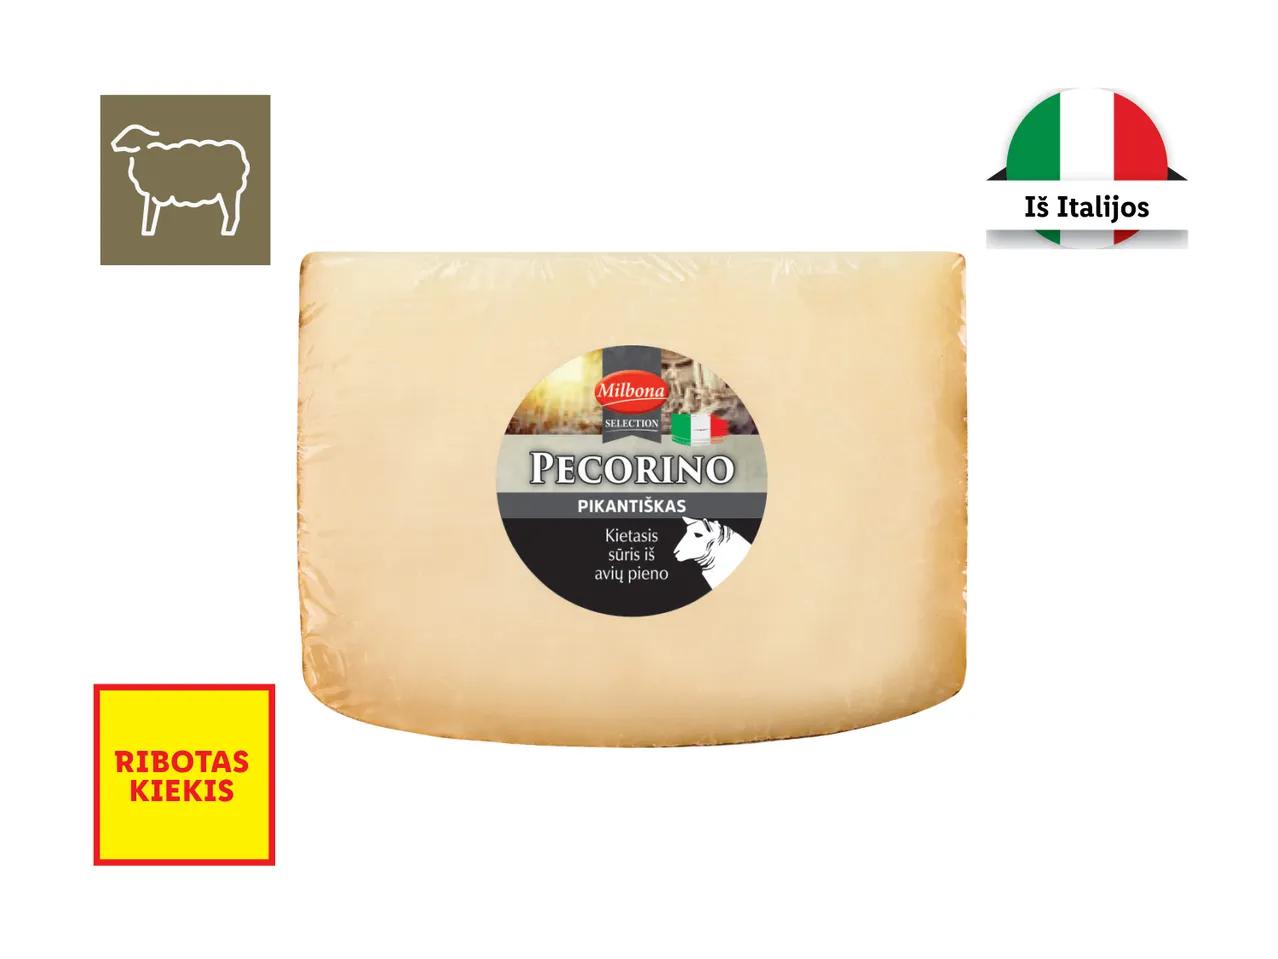 Kietasis sūris iš avių pieno „Pecorino“